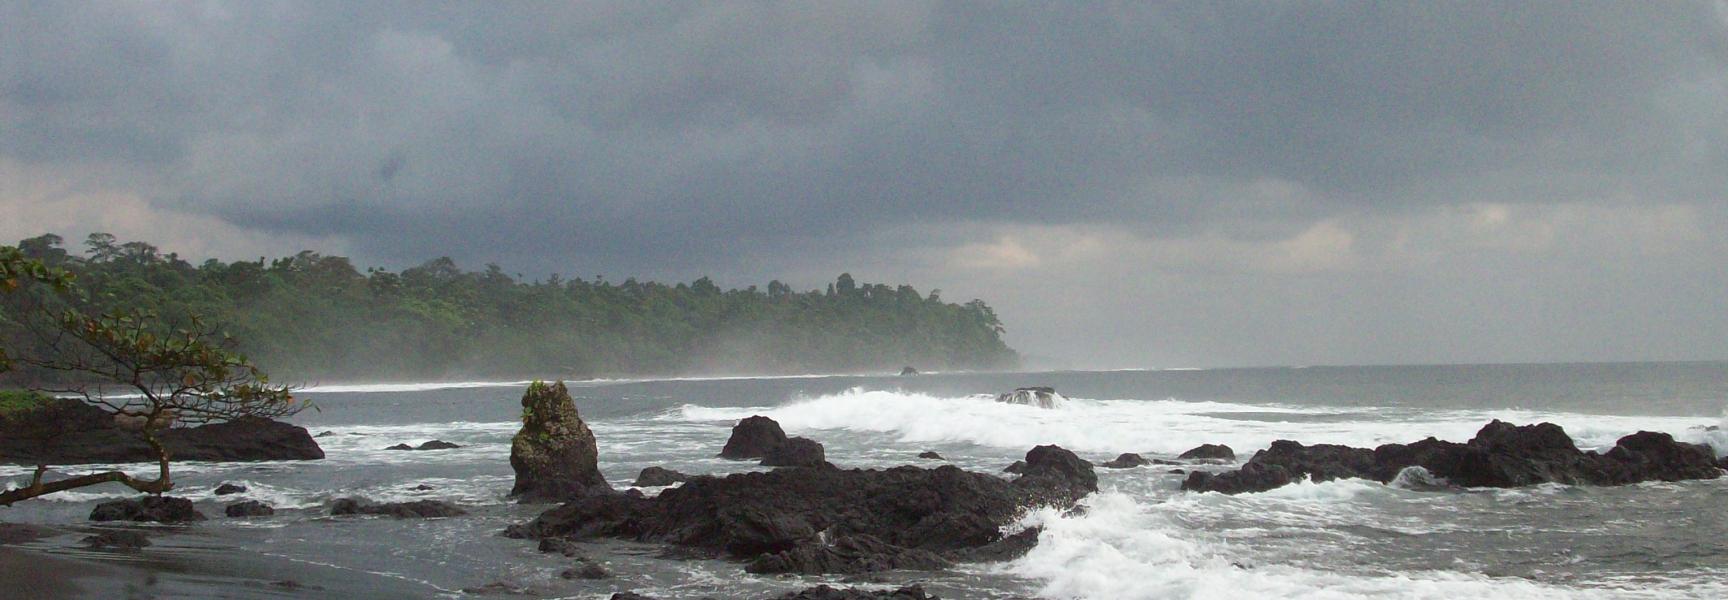 Costa de Guinea Ecuatorial